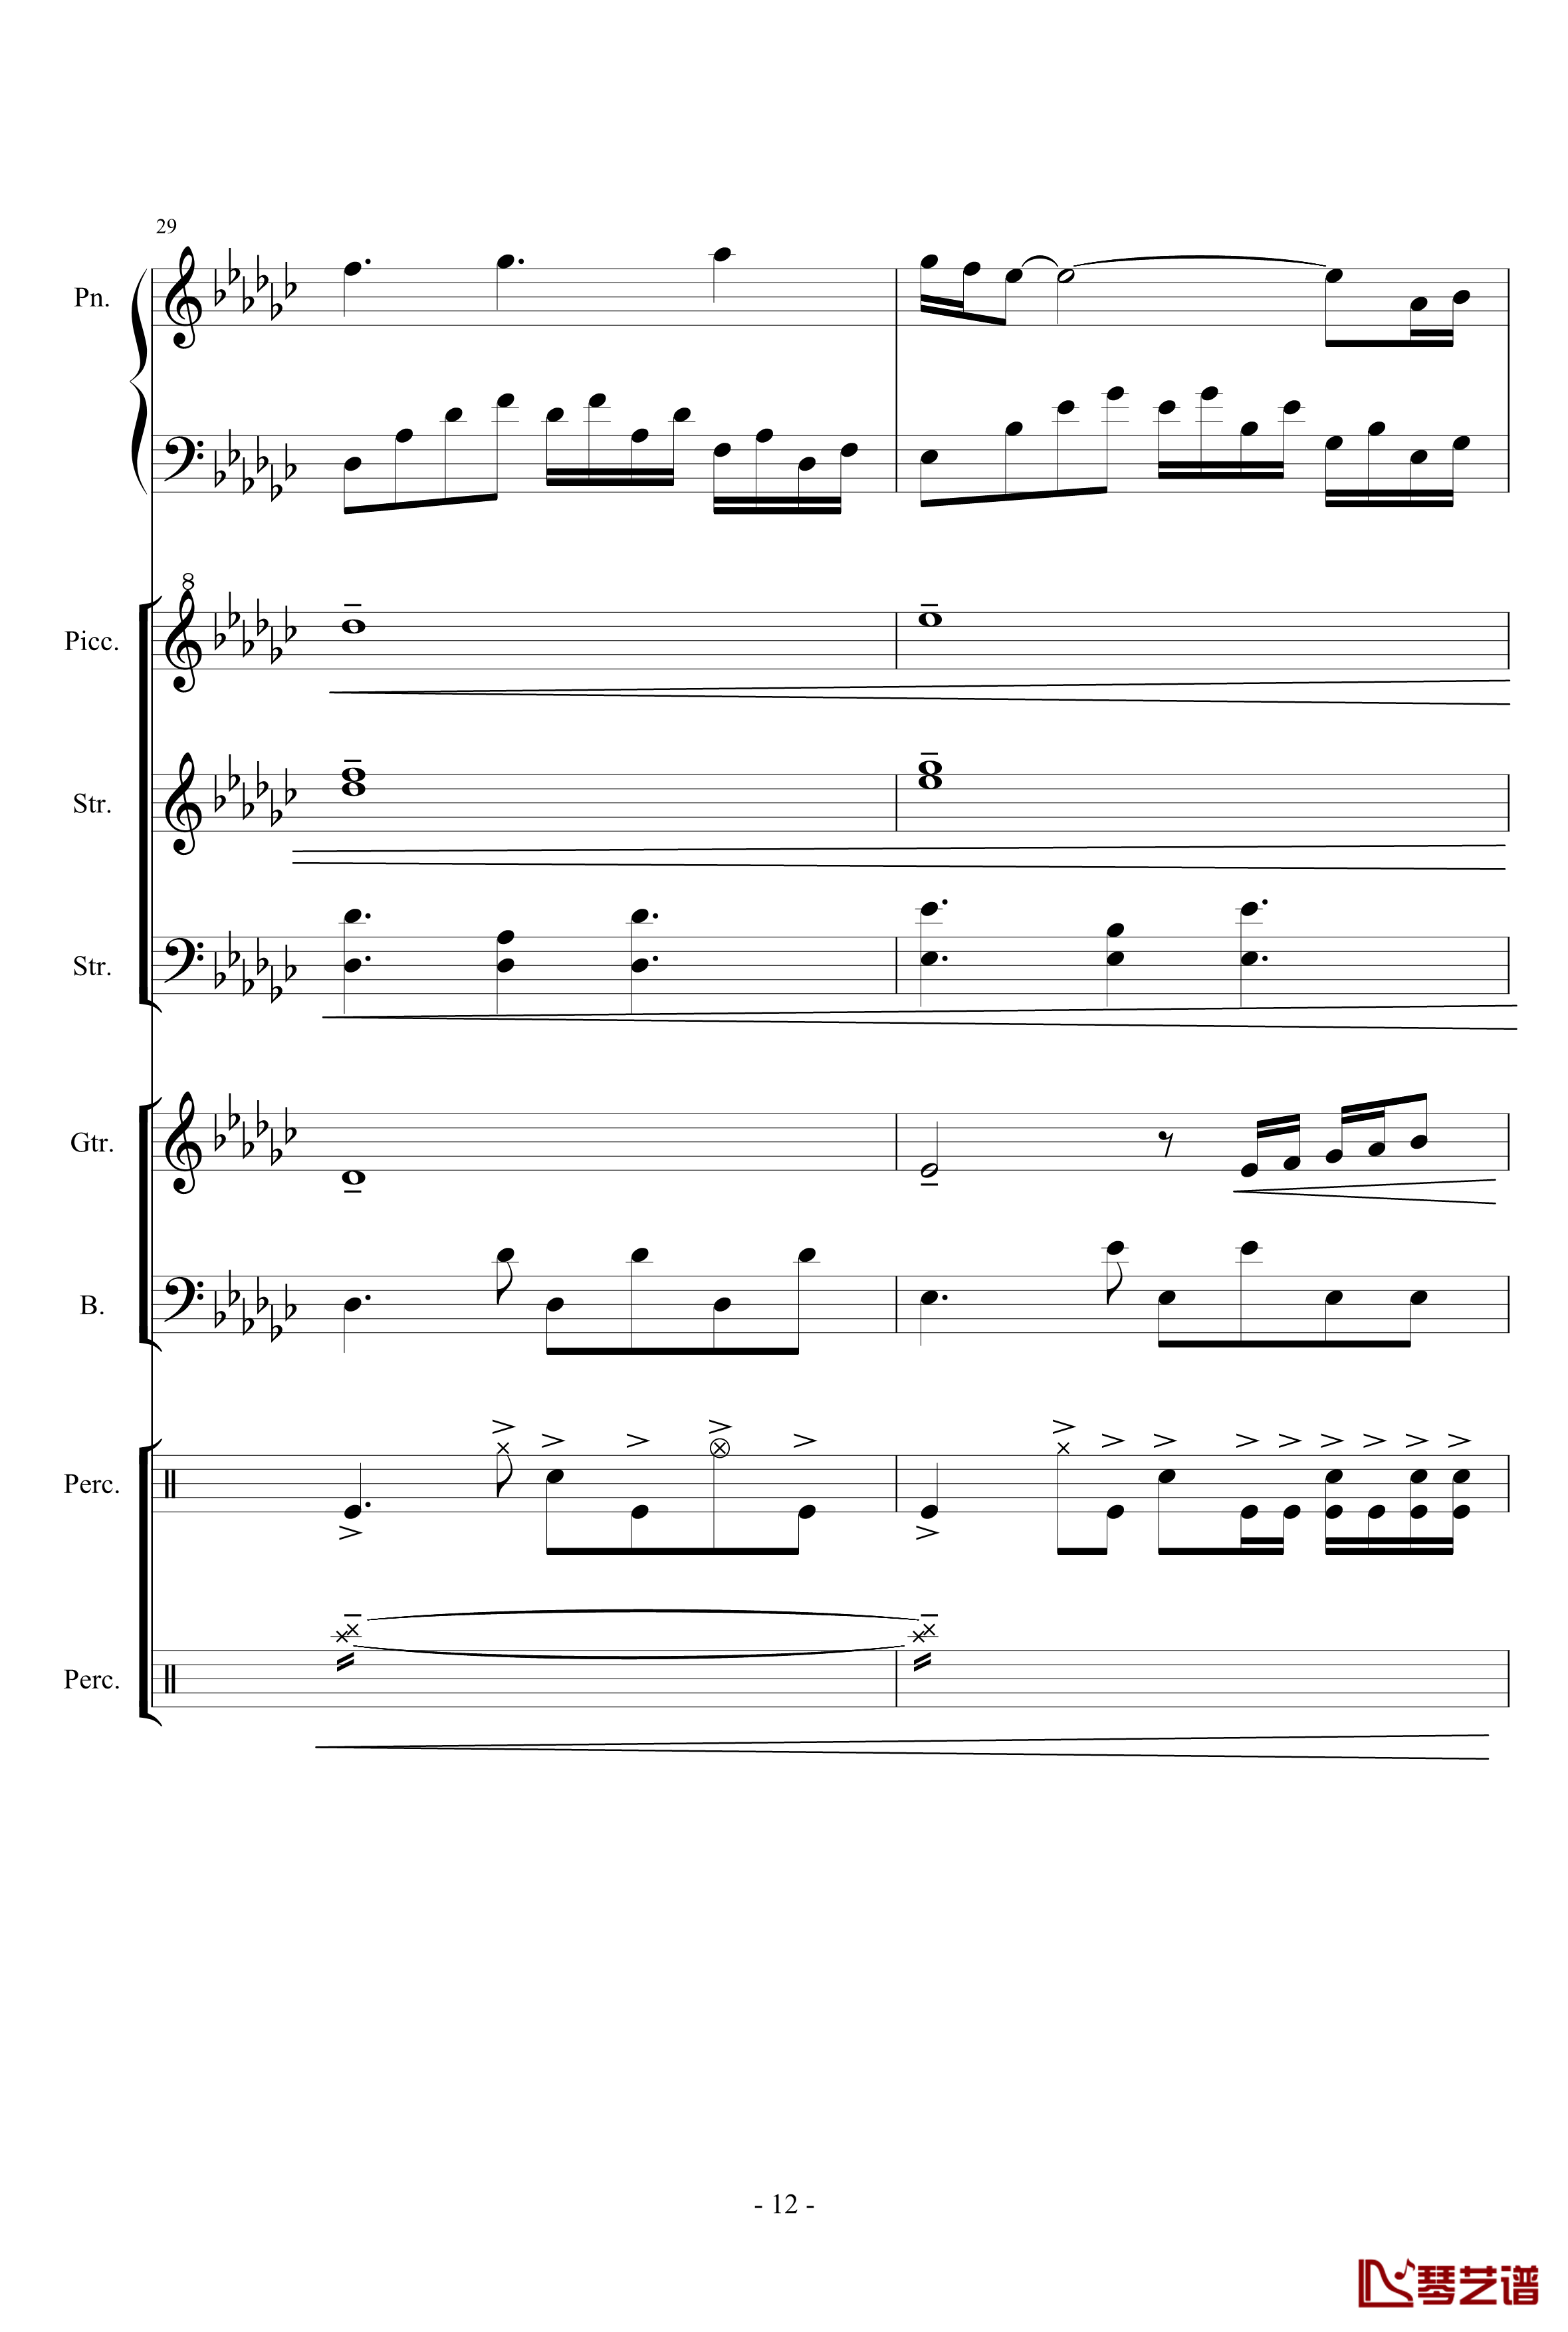 幻想世界之音2钢琴谱-lujianxiang555